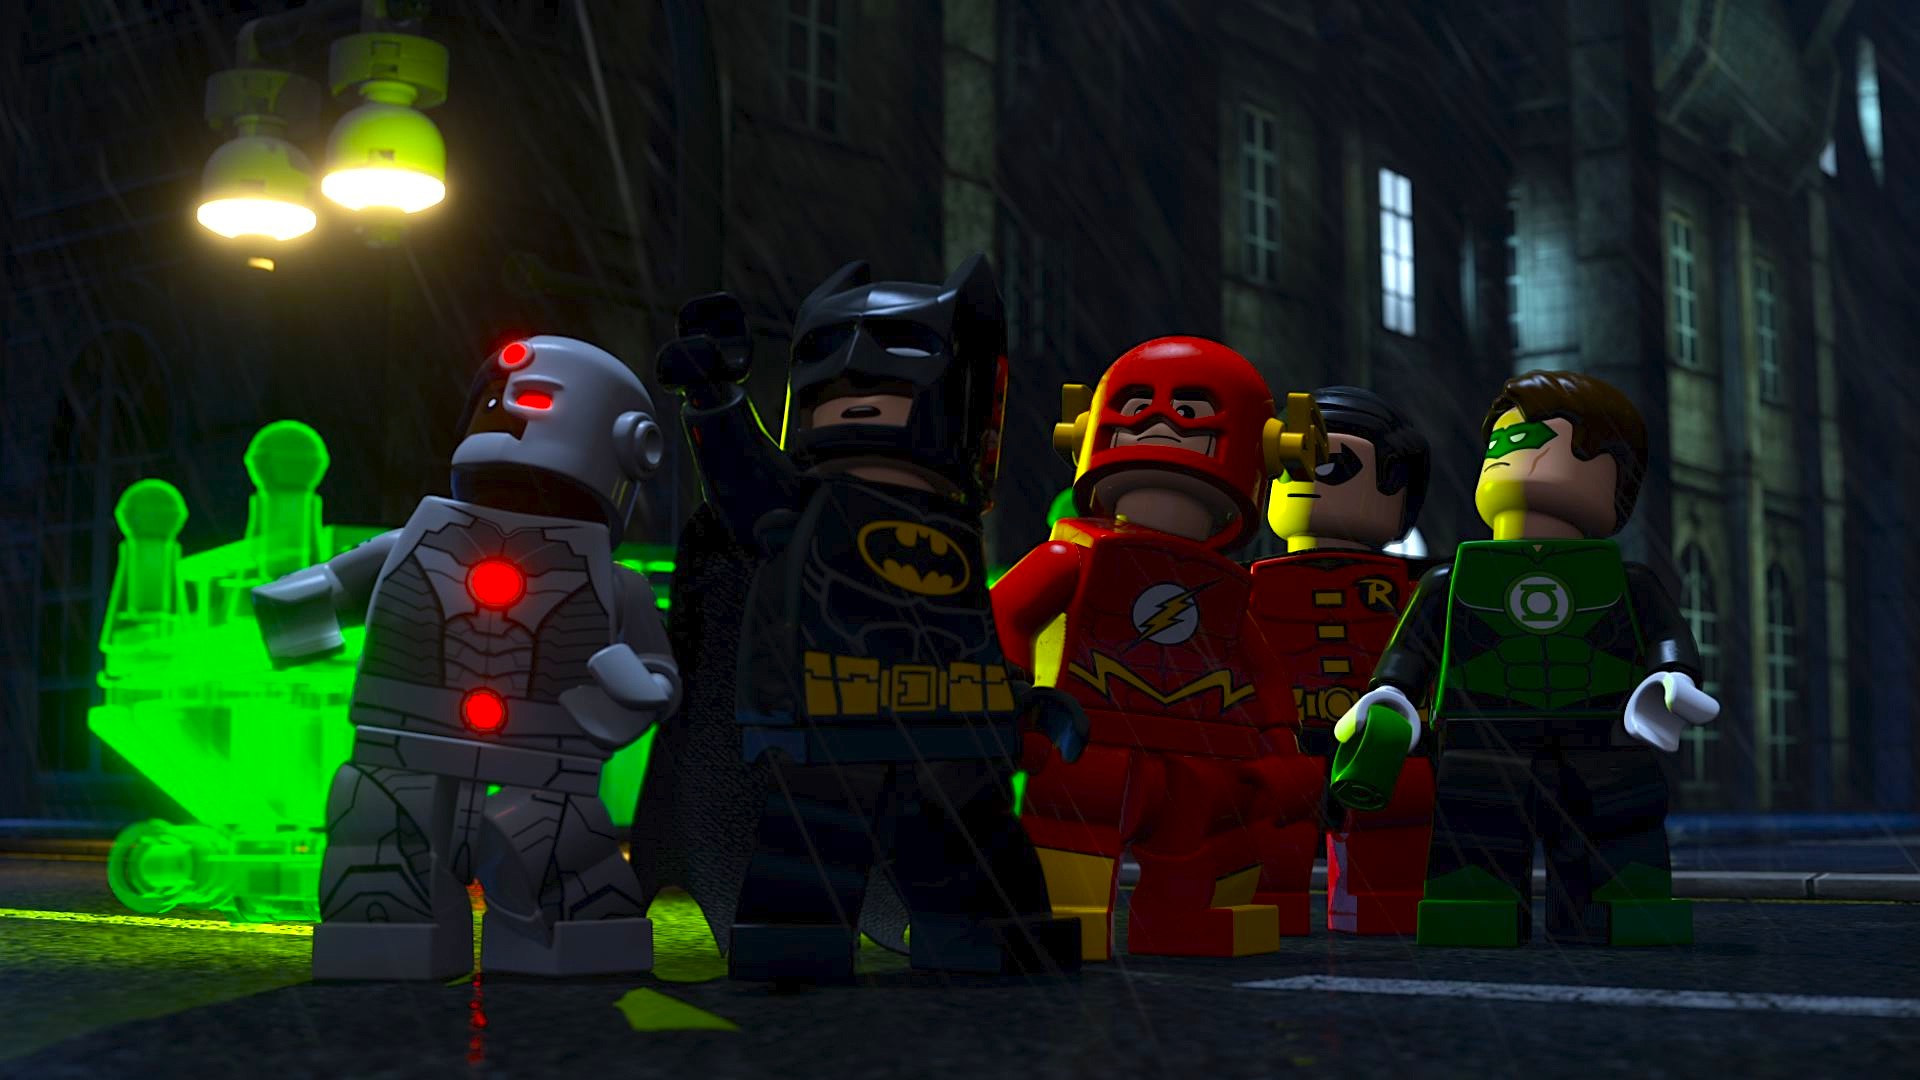 Prepare-se para uma divertida aventura da Liga da Justiça em LEGO! (Foto: DC Comics)